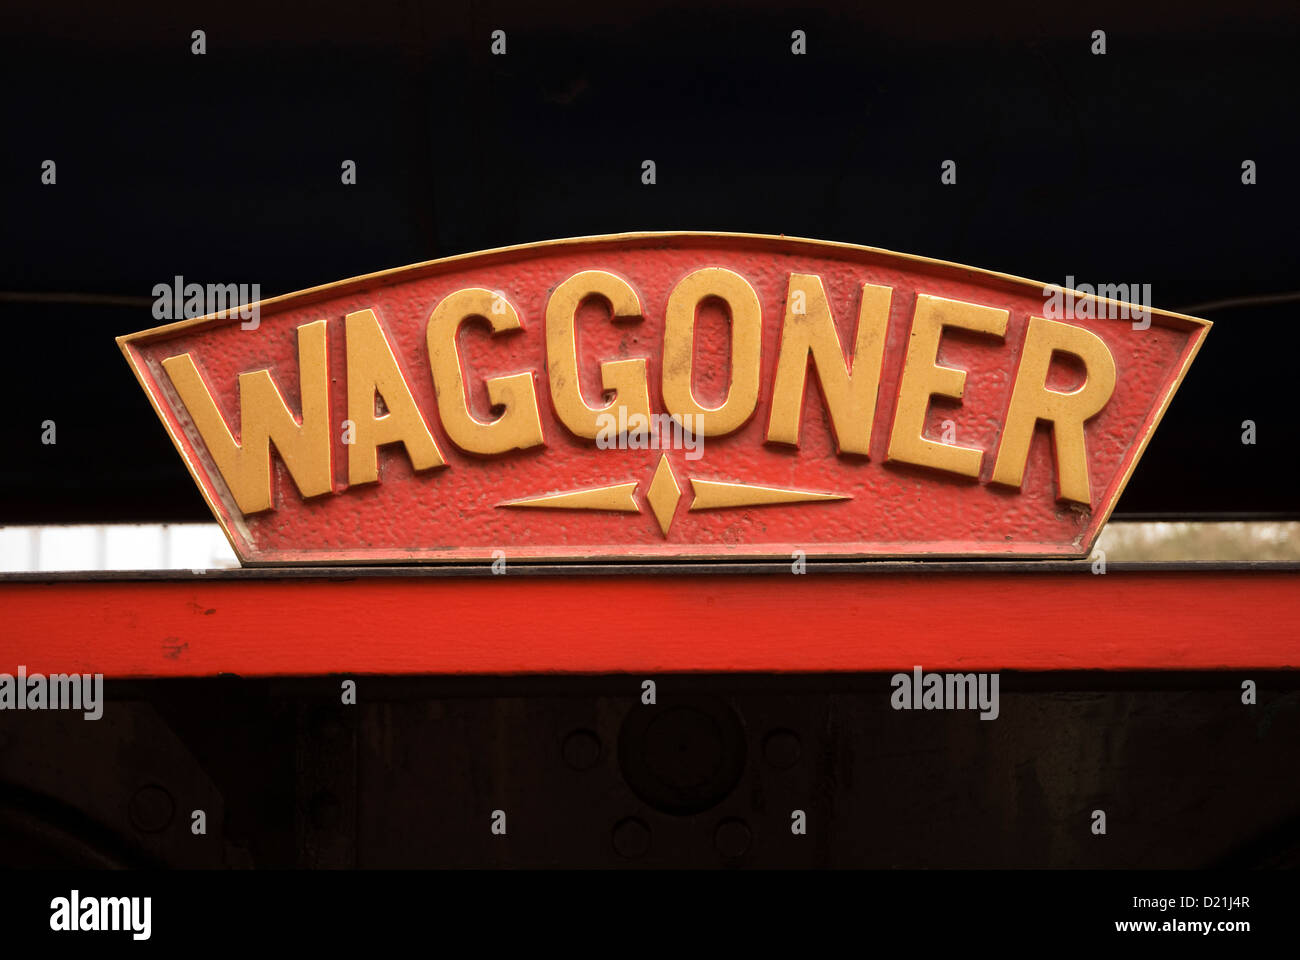 Placa con el nombre de locomotora 'Waggoner' Foto de stock